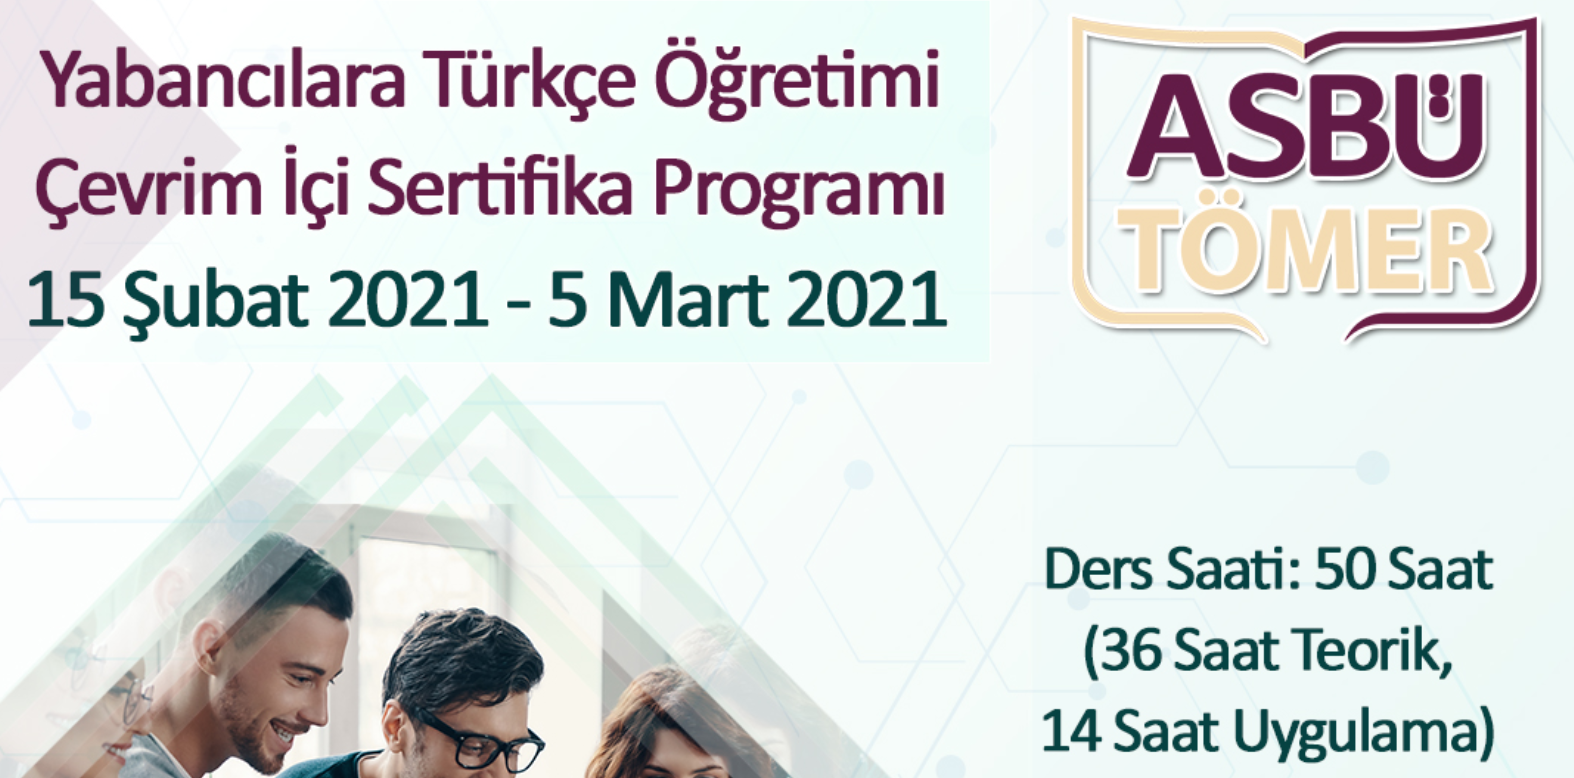 Yabancılara Türkçe Öğretimi Çevrim İçi Sertifika Programı ASBÜ TÖMER